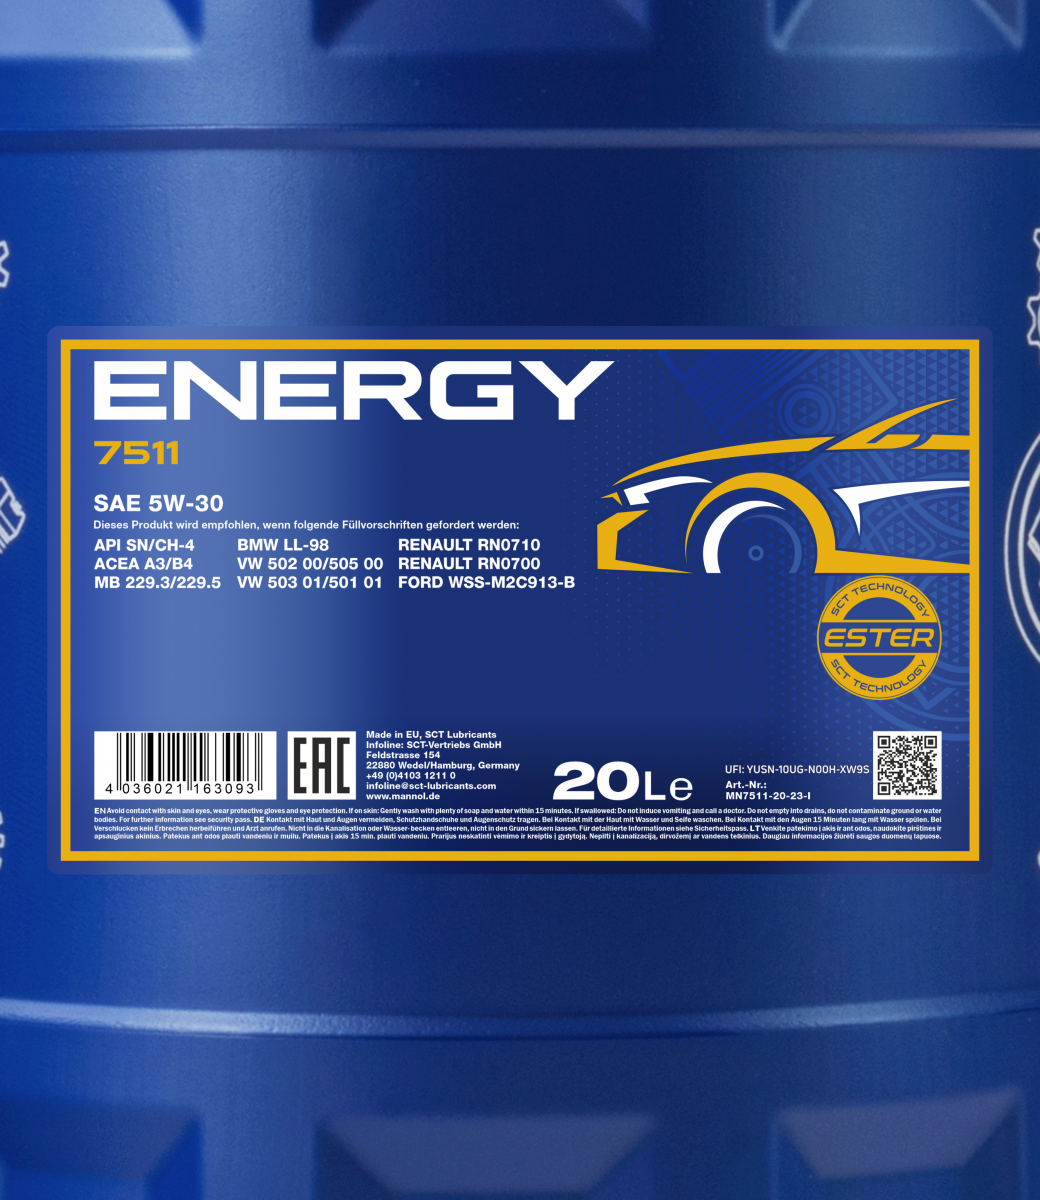 Aceite Lubricante 5W30 Mannol Energy Formula C4 / MN79175